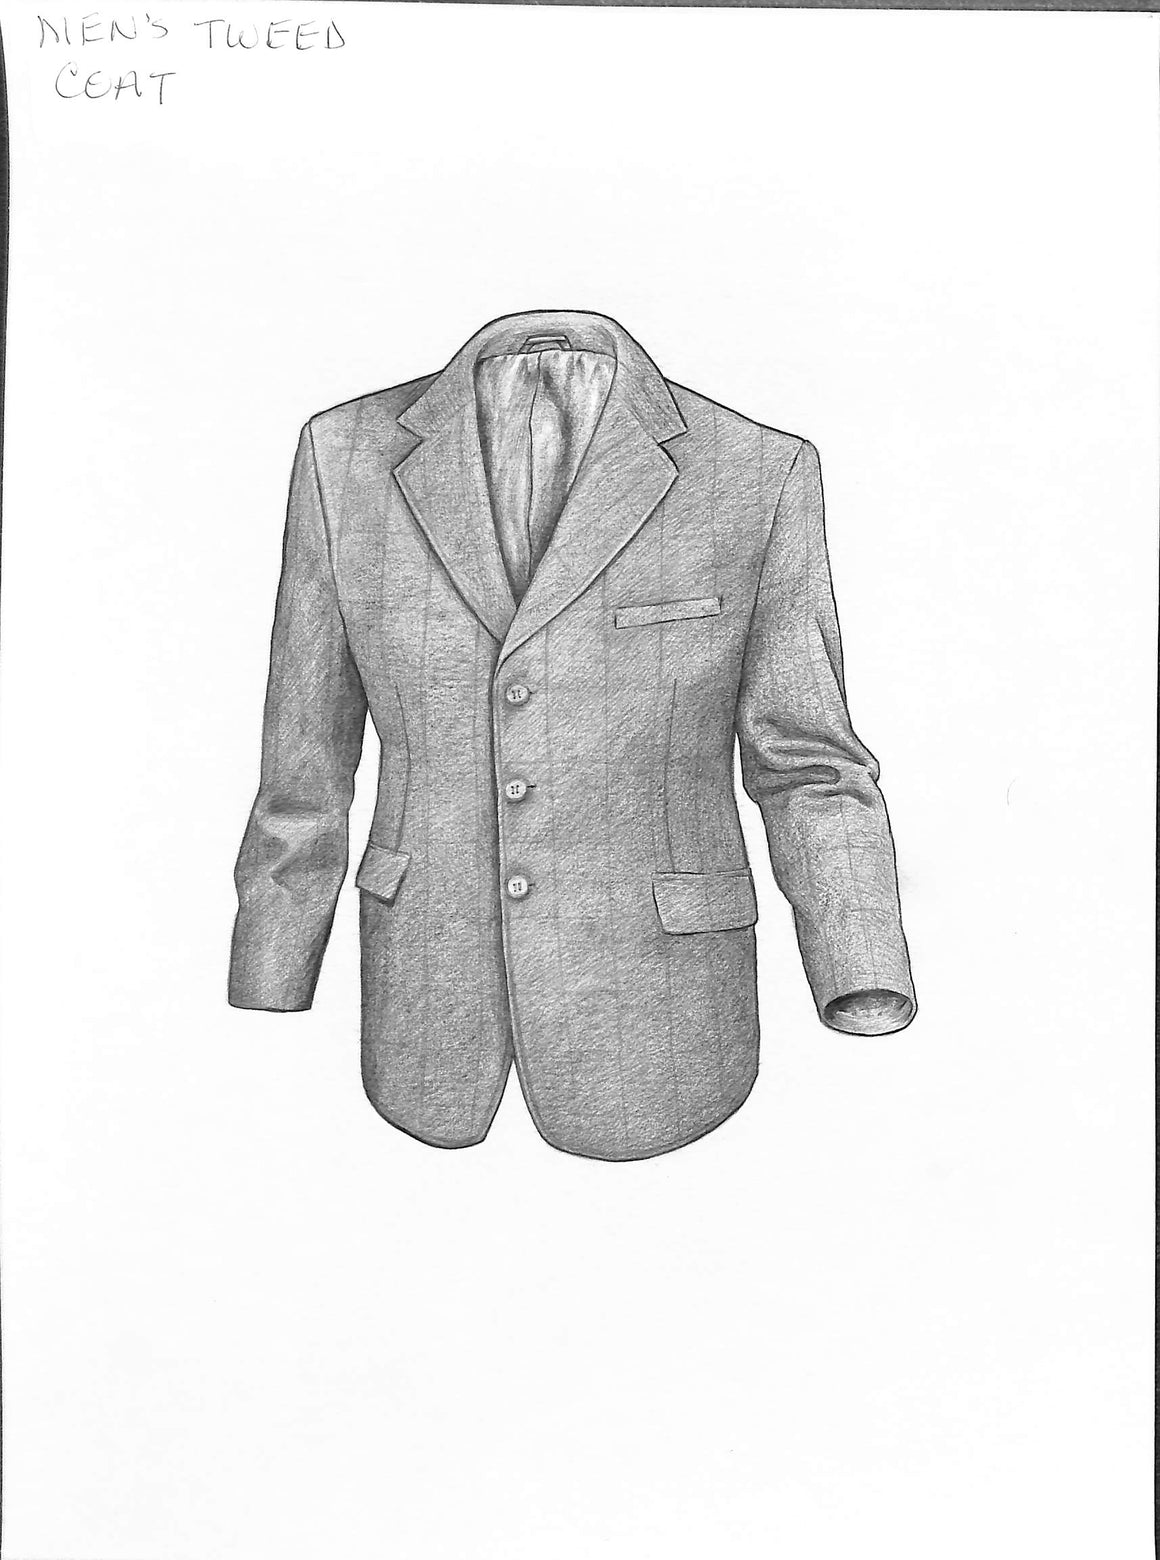 Gentleman's Tweed Coat